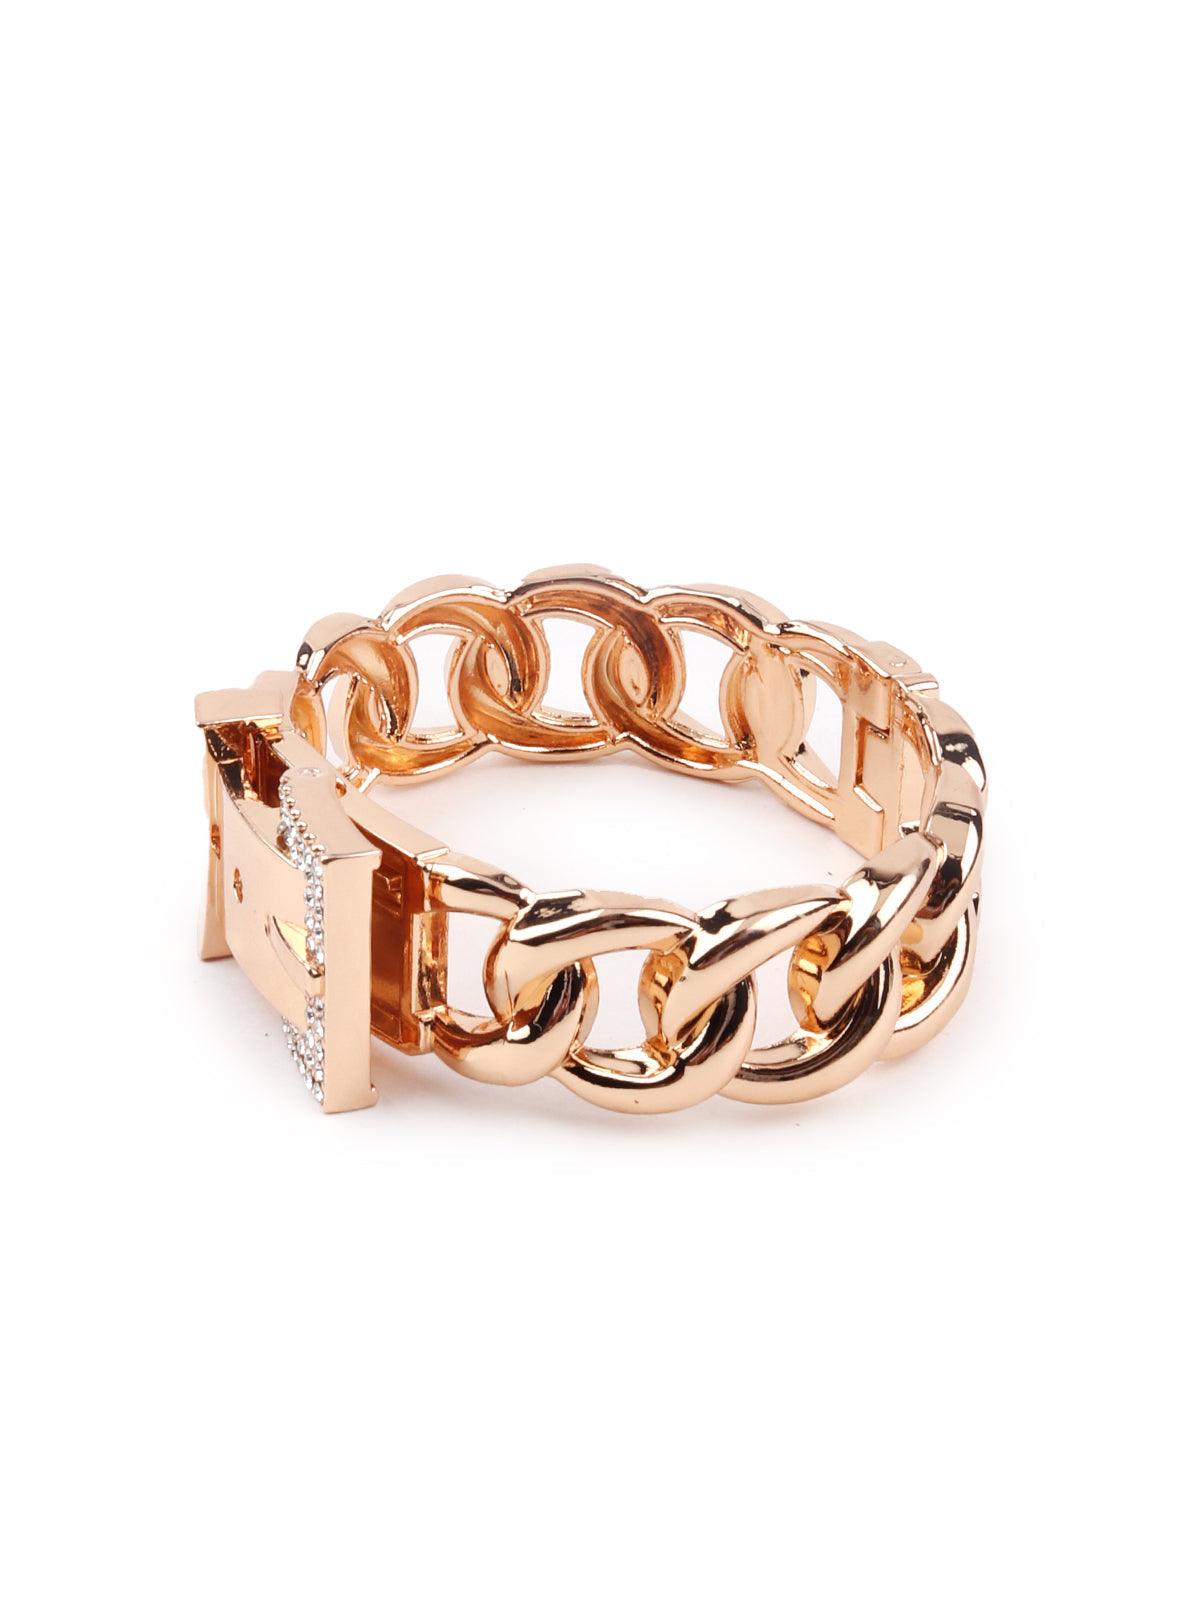 Women's Gold-Tone Chained Bracelet For Women - Odette